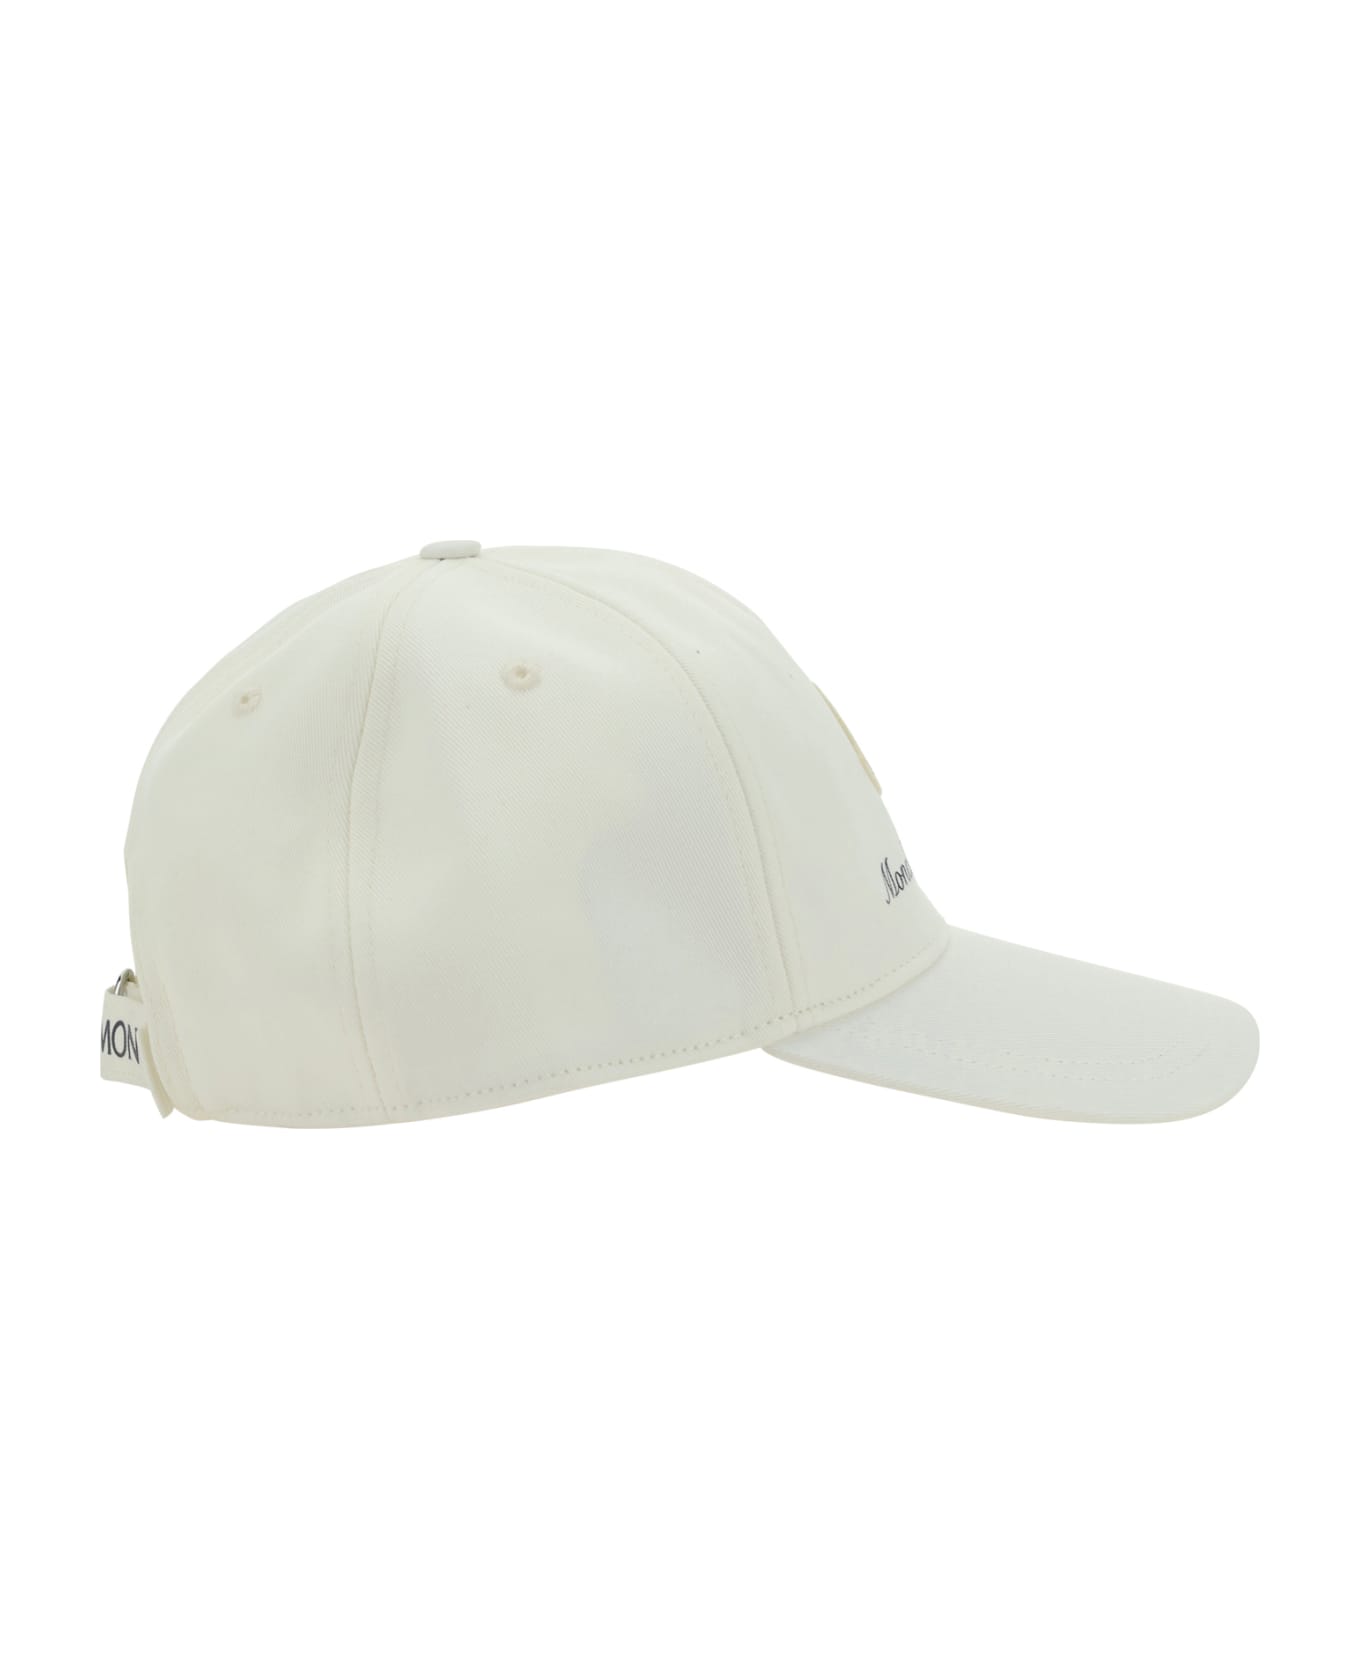 Moncler Baseball Cap - Non definito 帽子